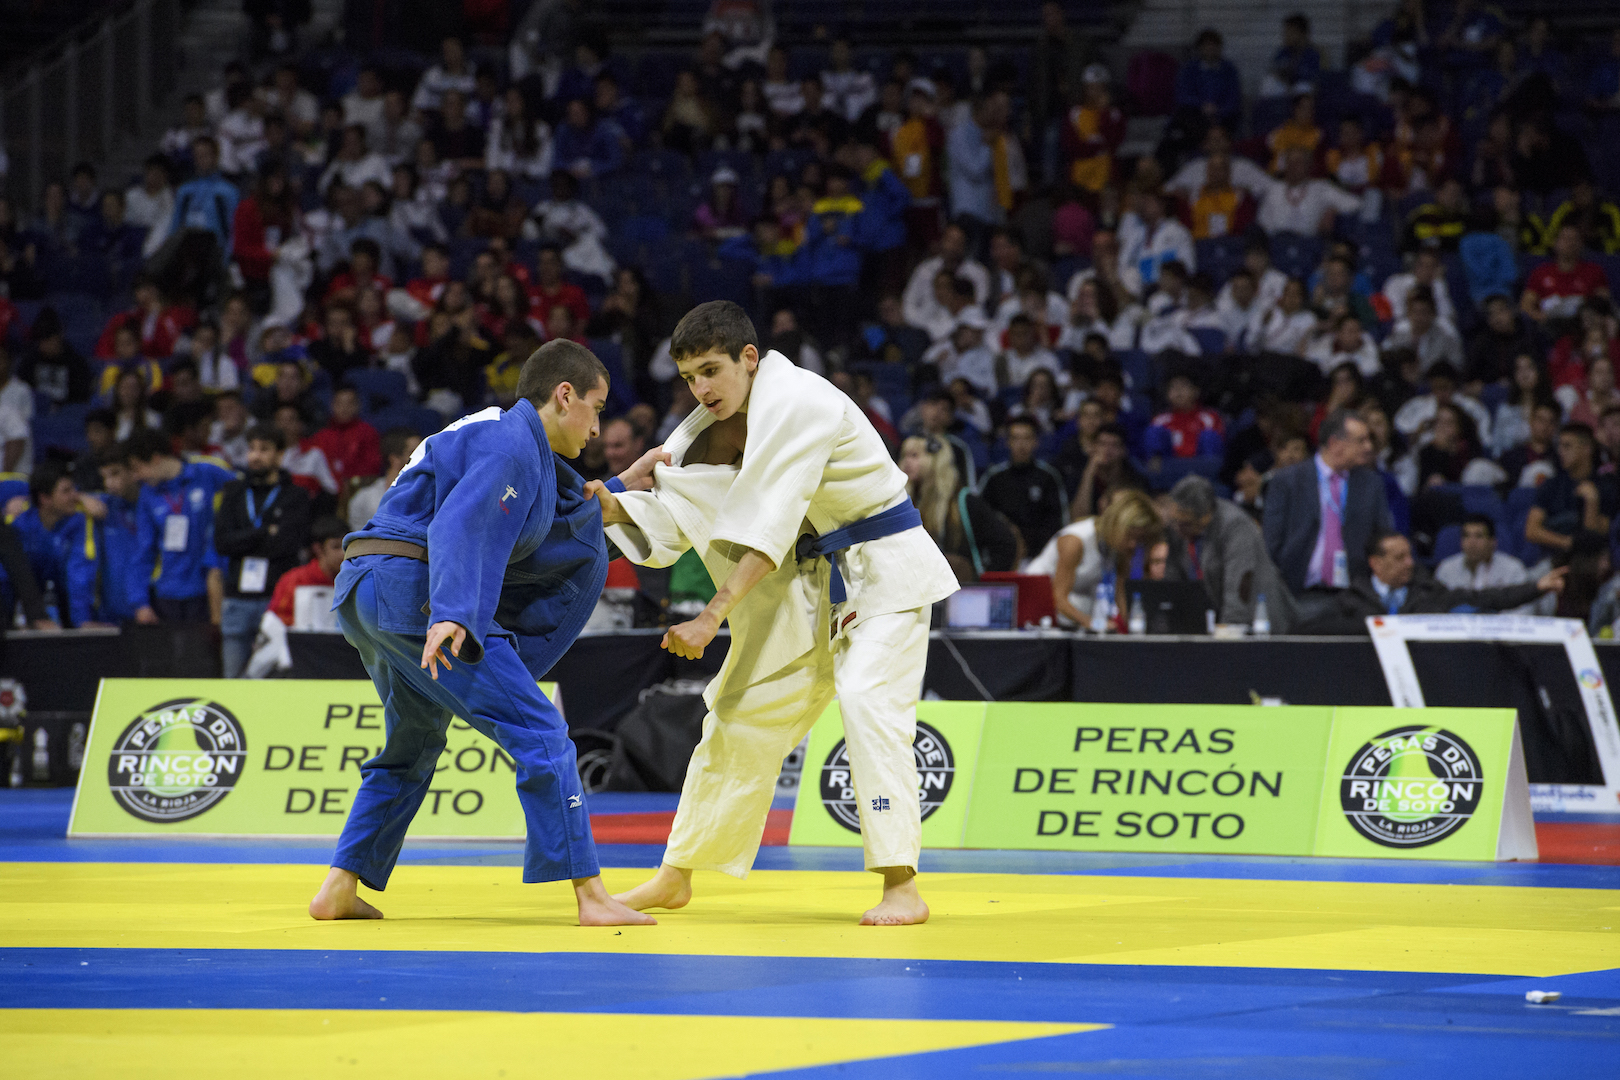 Campeonato de España de Judo en Madrid